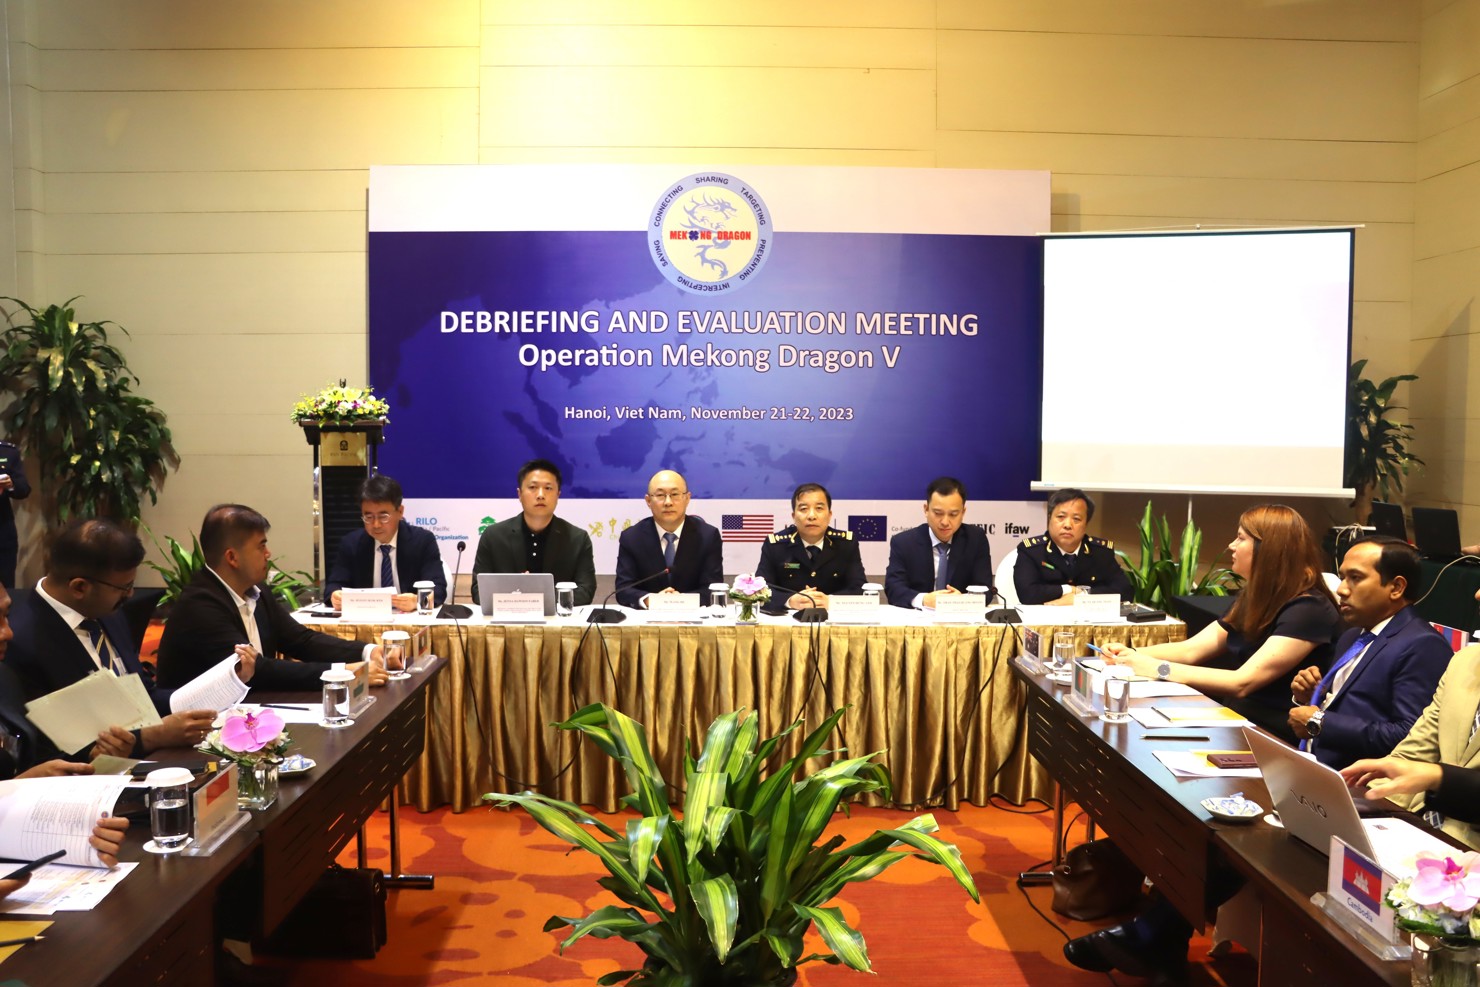 Tổng cục Hải quan phối hợp với Cơ quan phòng chống ma túy Liên hợp quốc (UNODC) tổ chức Hội nghị tổng kết kết quả triển khai Chiến dịch Con rồng Mê Kông giai đoạn V (OMD V).